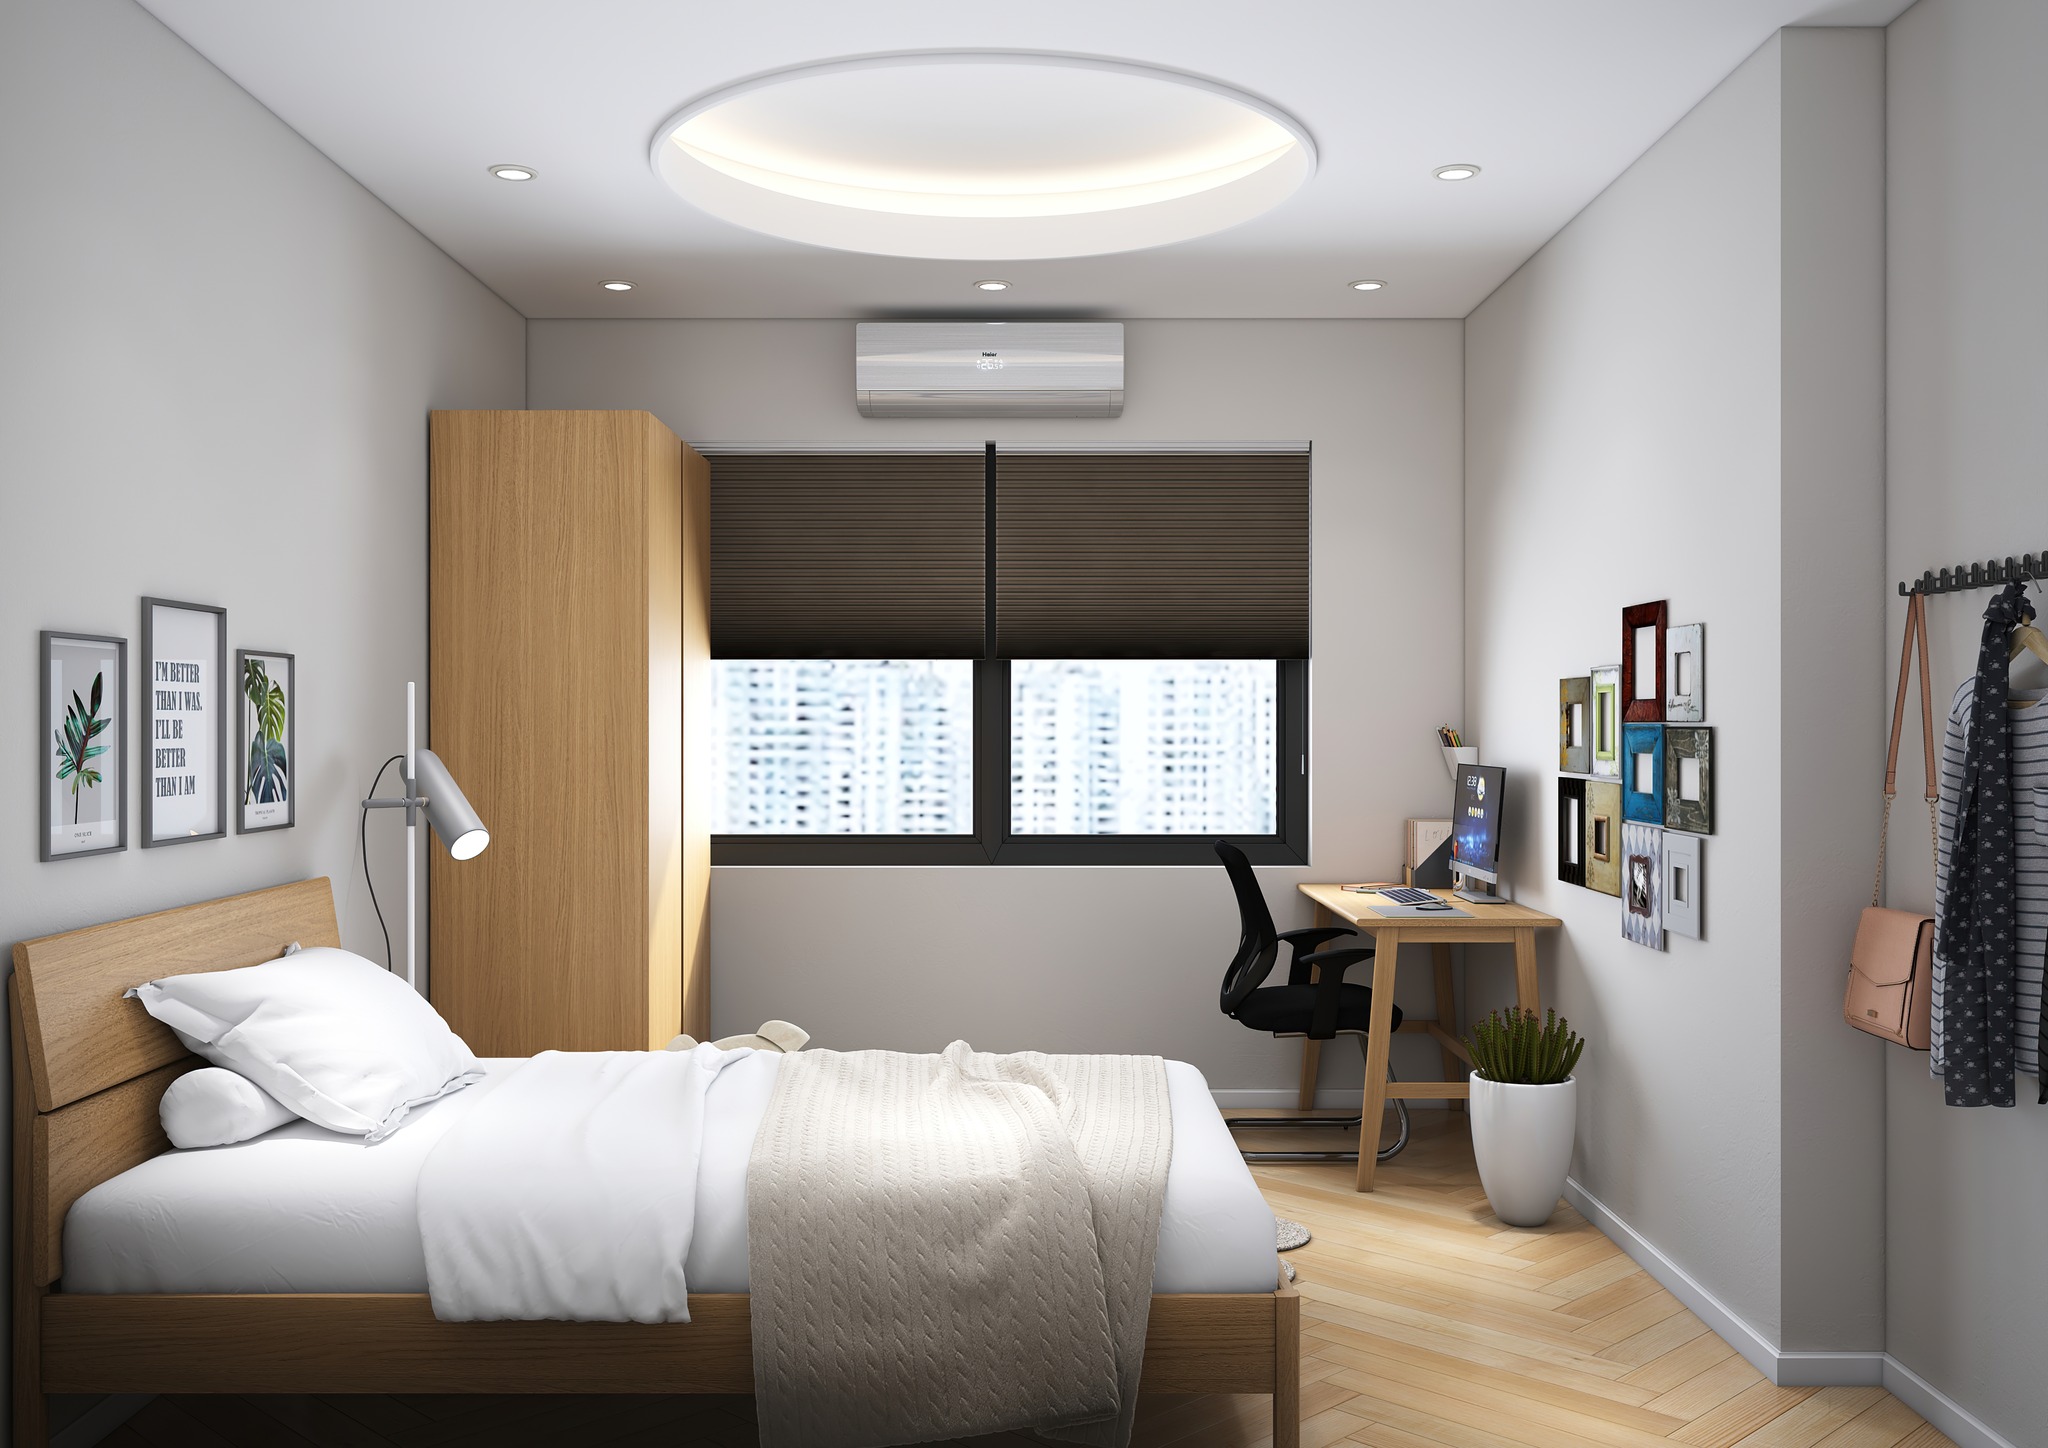 Ý tưởng trang trí phòng ngủ nhỏ 3m2 tối ưu công năng và thẩm mỹ cao 1